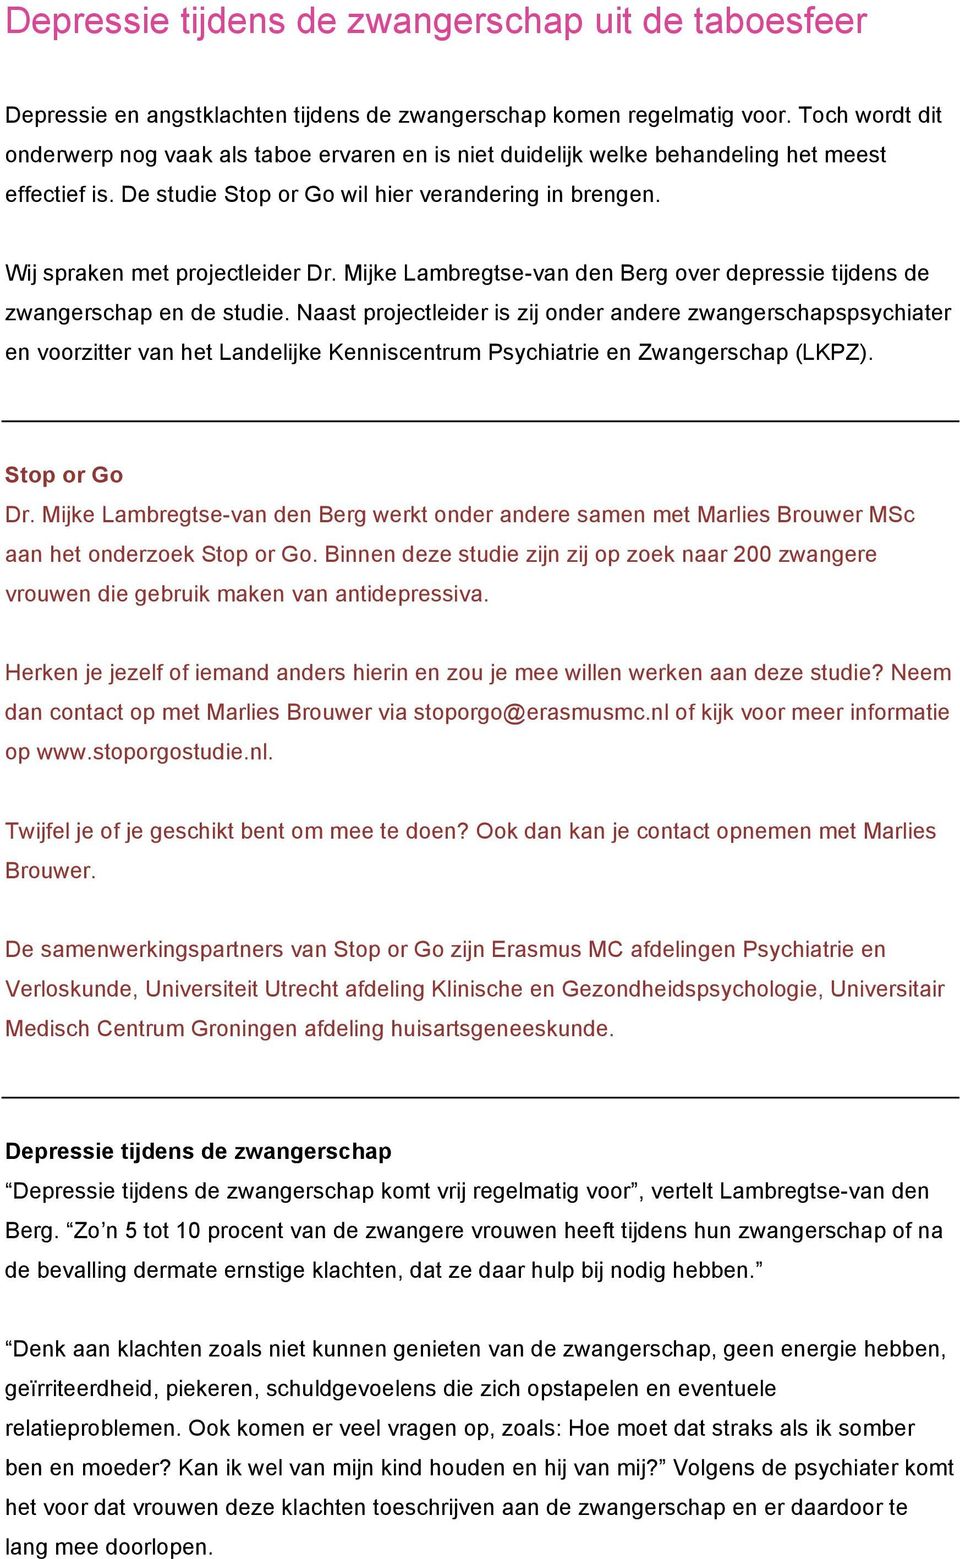 Wij spraken met projectleider Dr. Mijke Lambregtse-van den Berg over depressie tijdens de zwangerschap en de studie.